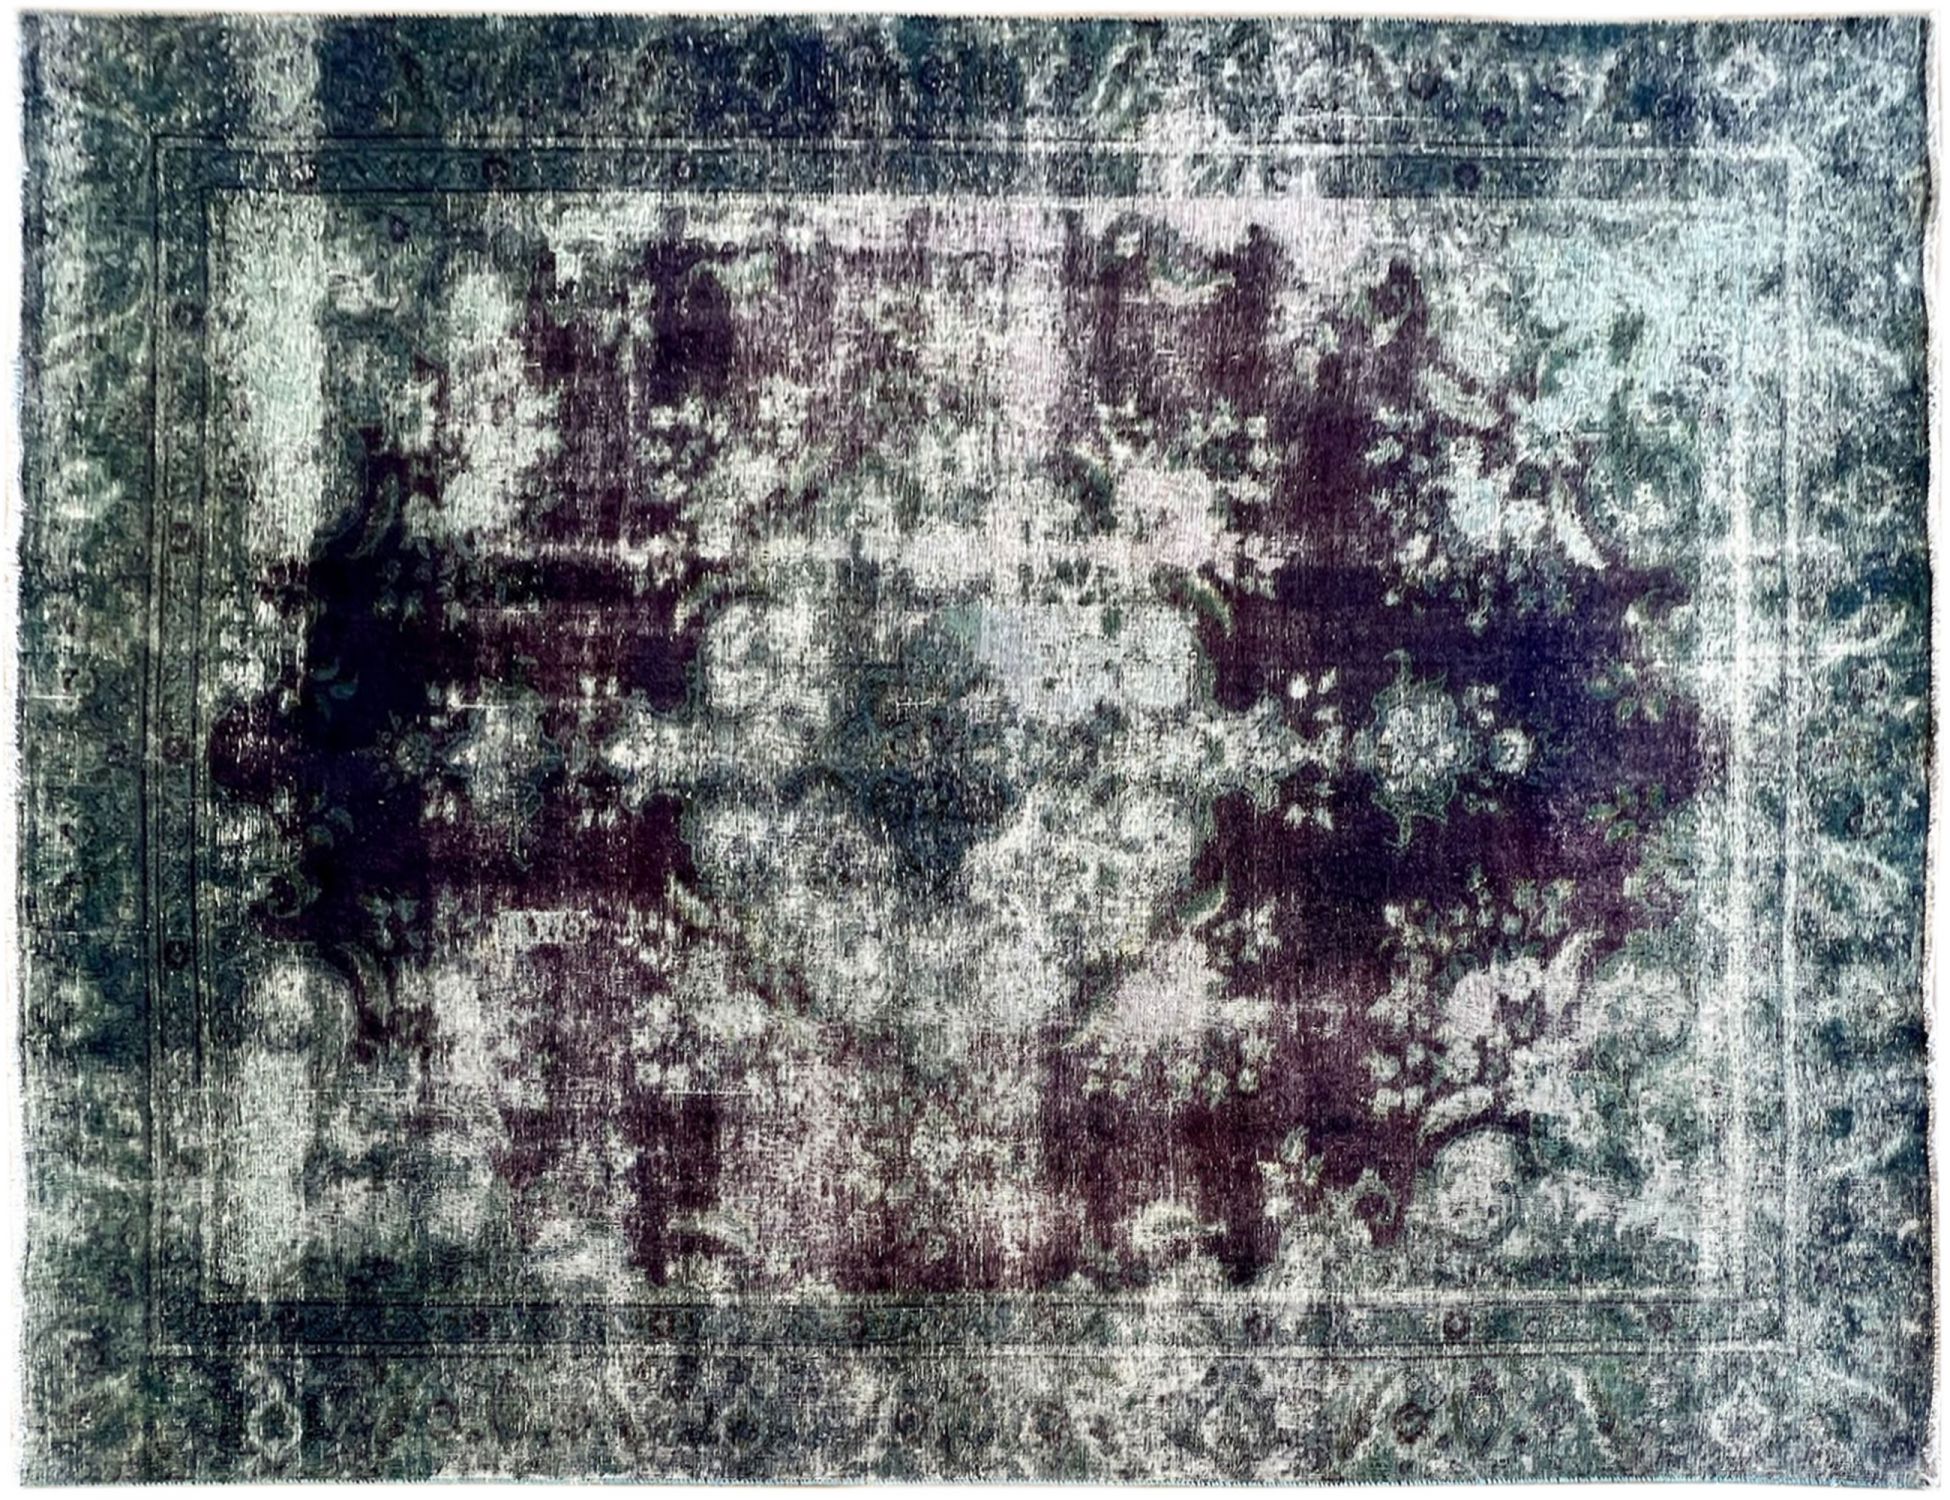 Persian Vintage Carpet  purple  <br/>330 x 220 cm